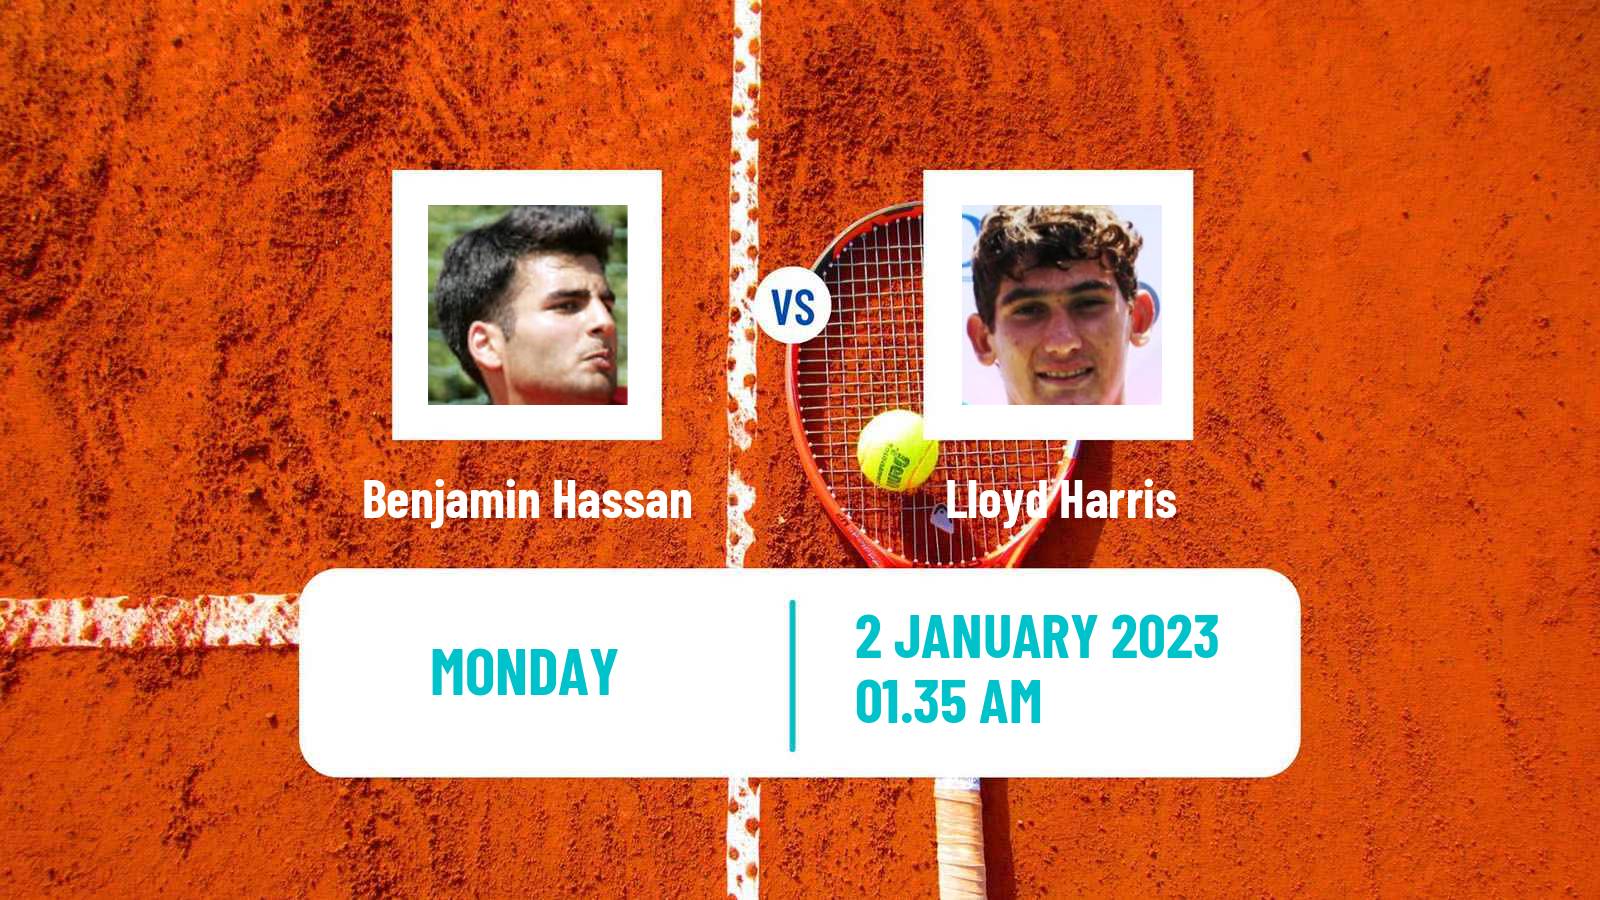 Tennis ATP Challenger Benjamin Hassan - Lloyd Harris